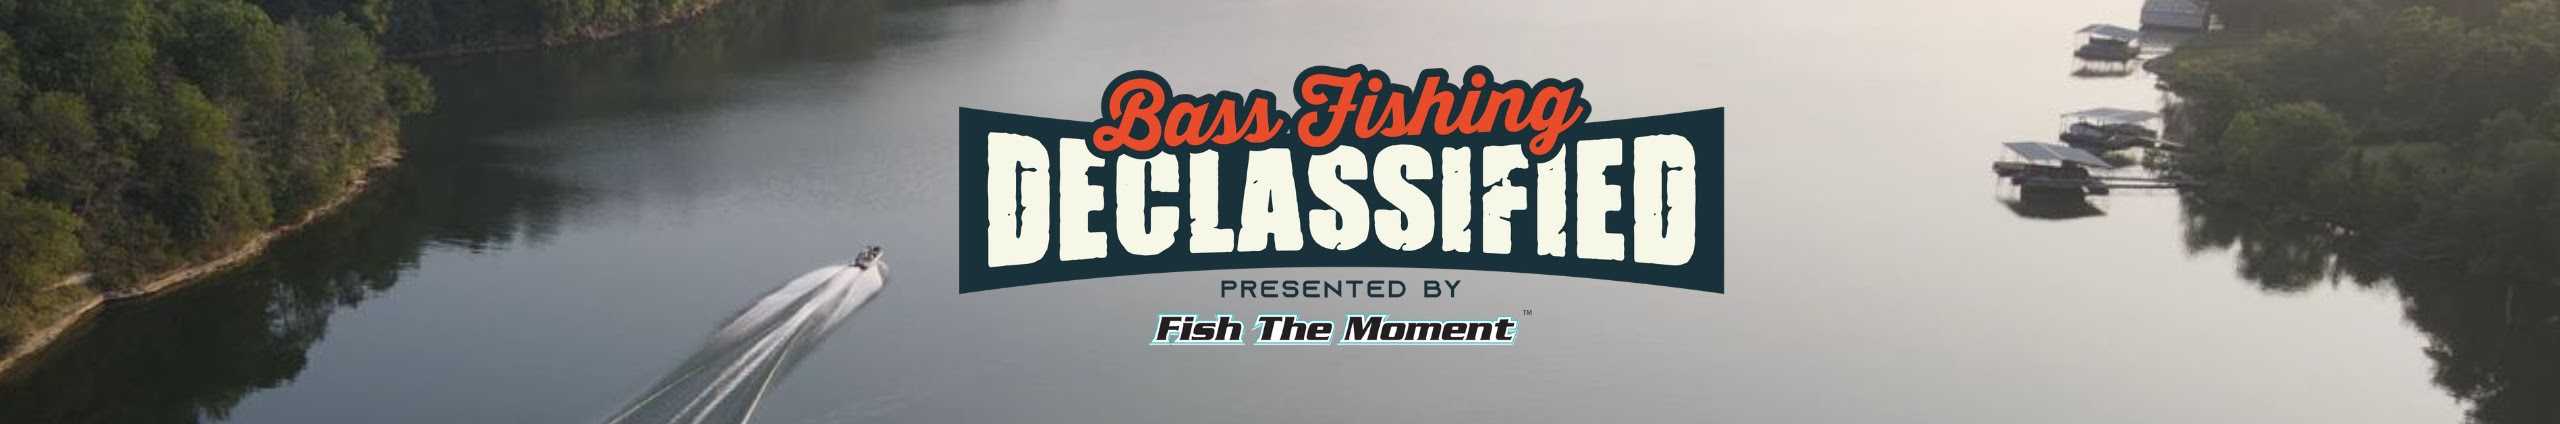 Bass Fishing Declassified 